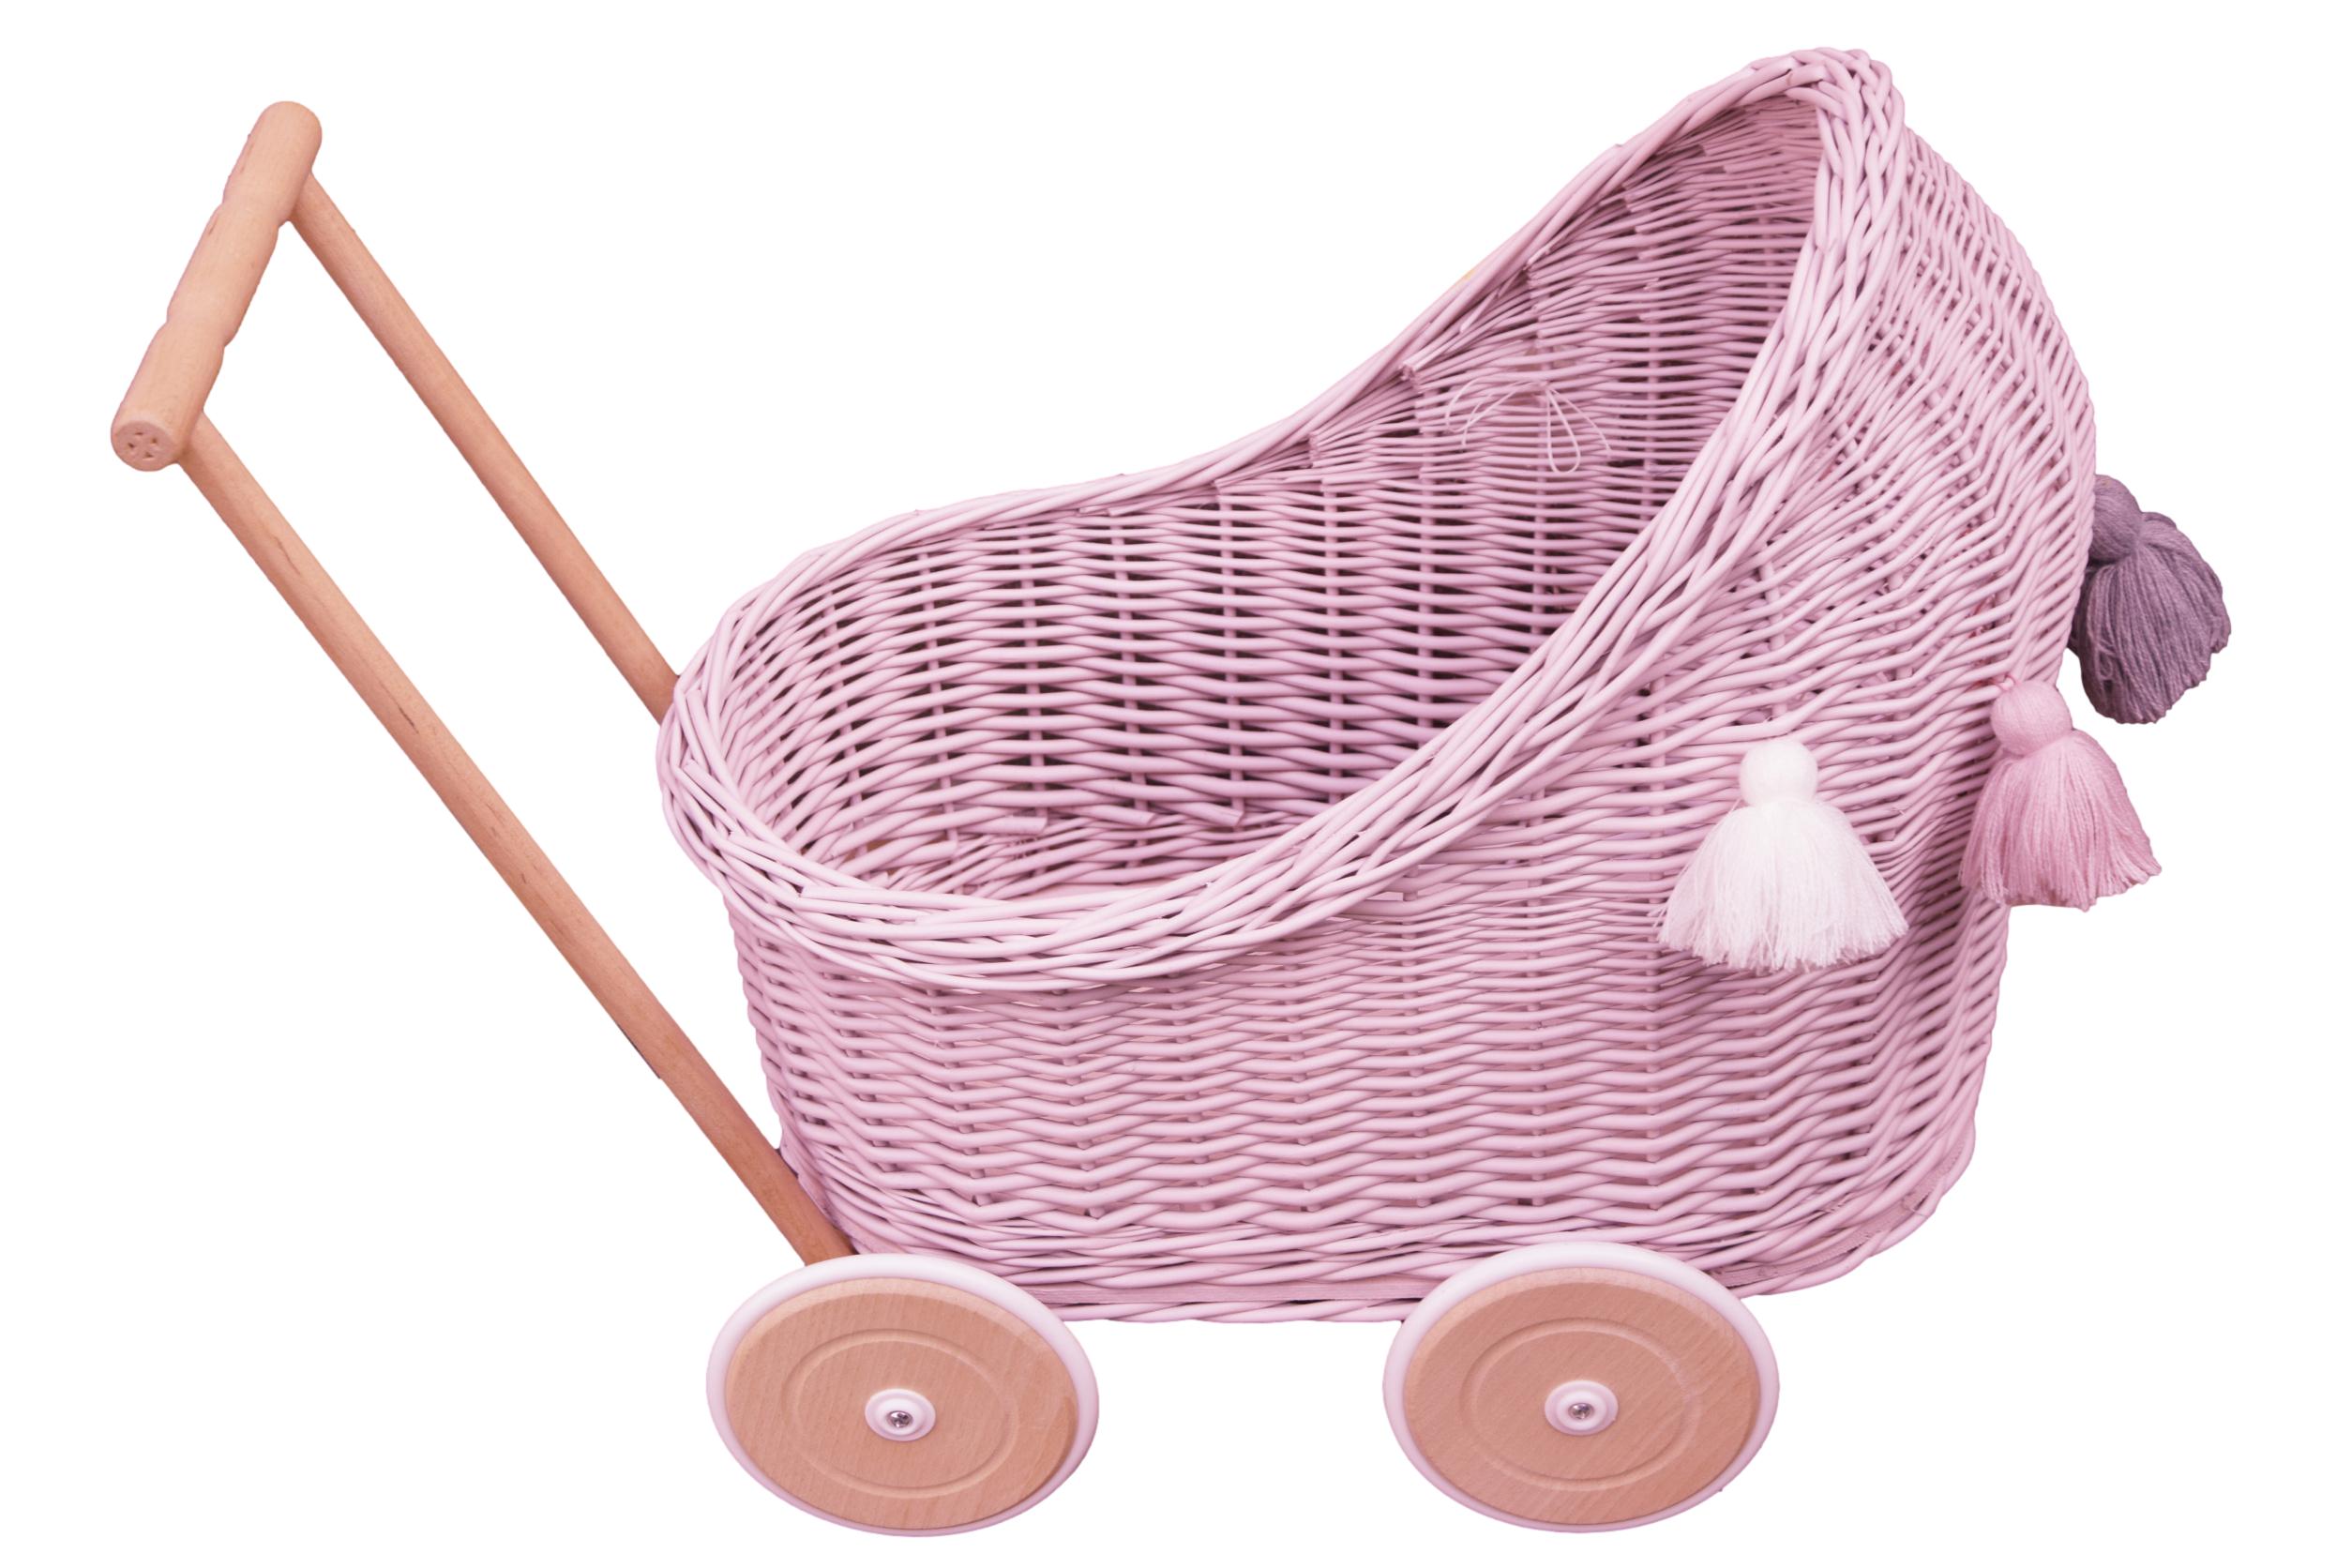 Wiklinowy wózek dla lalek w kolorze różowym z chwostami